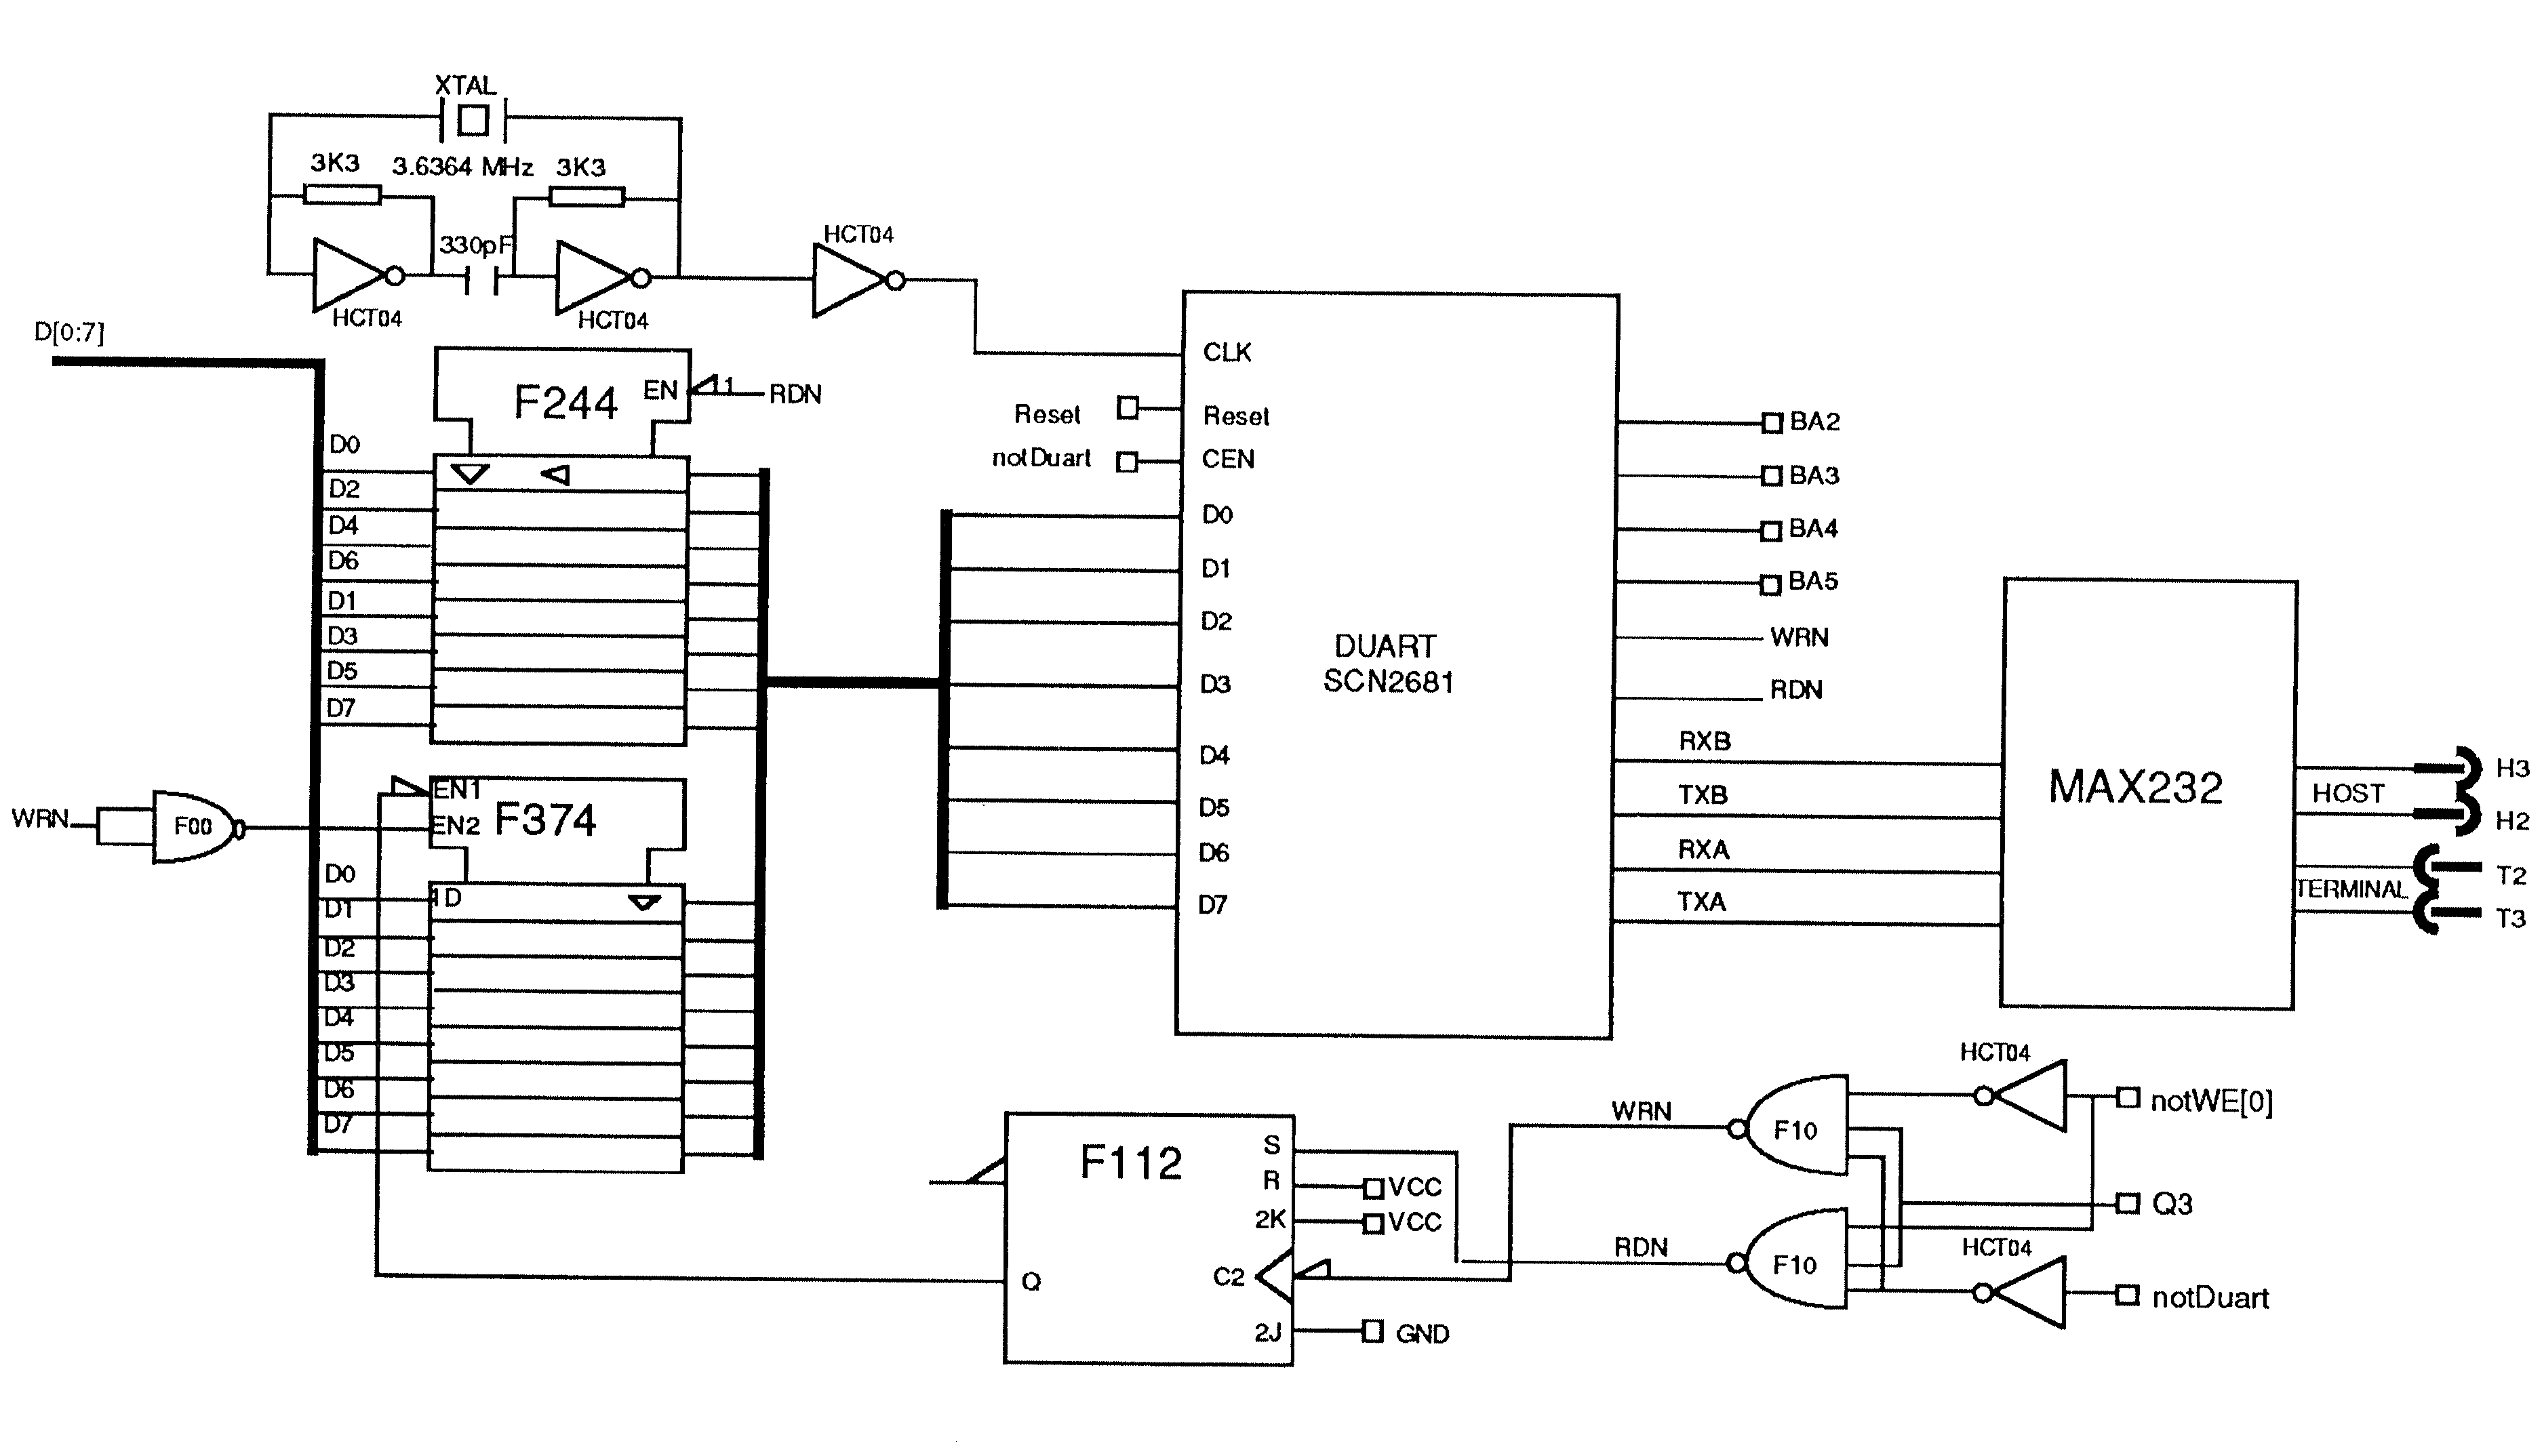 DUART Circuit diagram